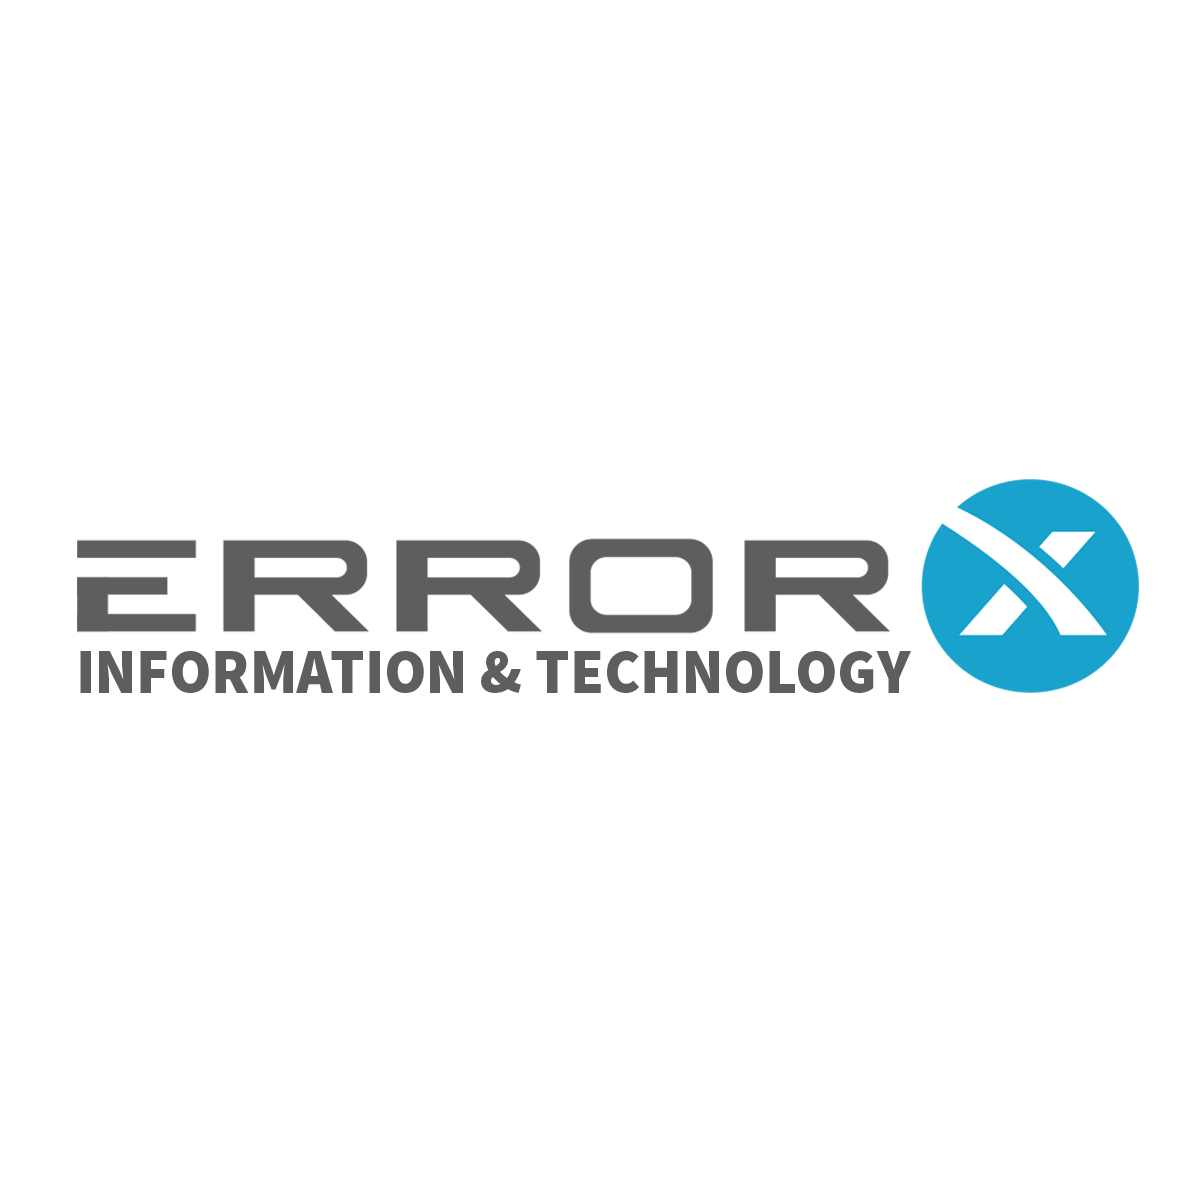 ERRORX INFORMATION & TECHNOLOGY LOGO